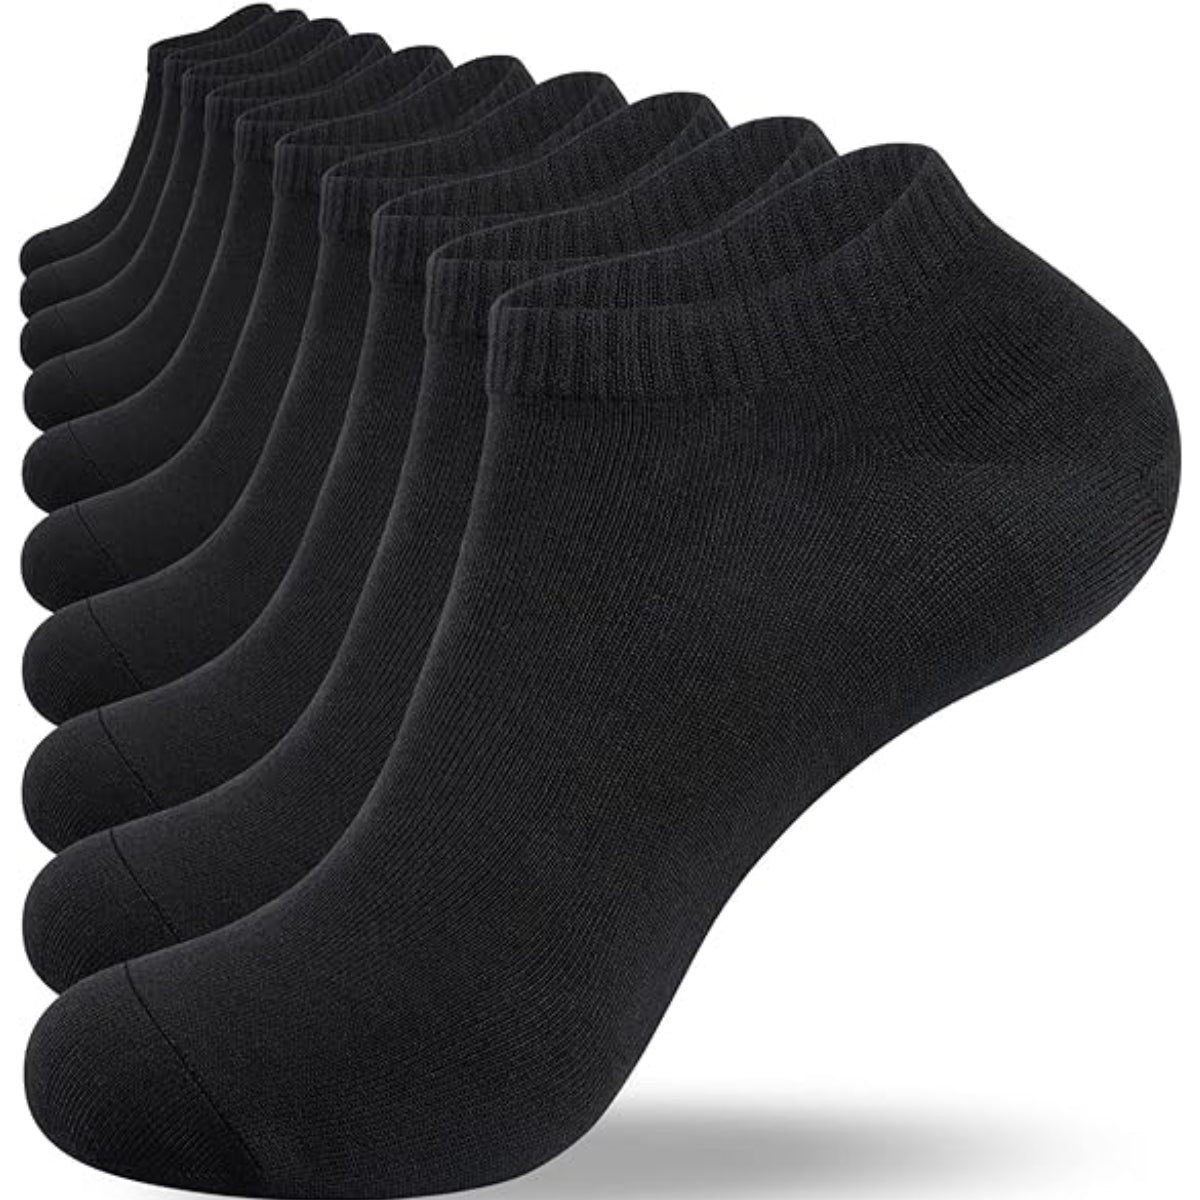 calcetines de algodon (12 pares)